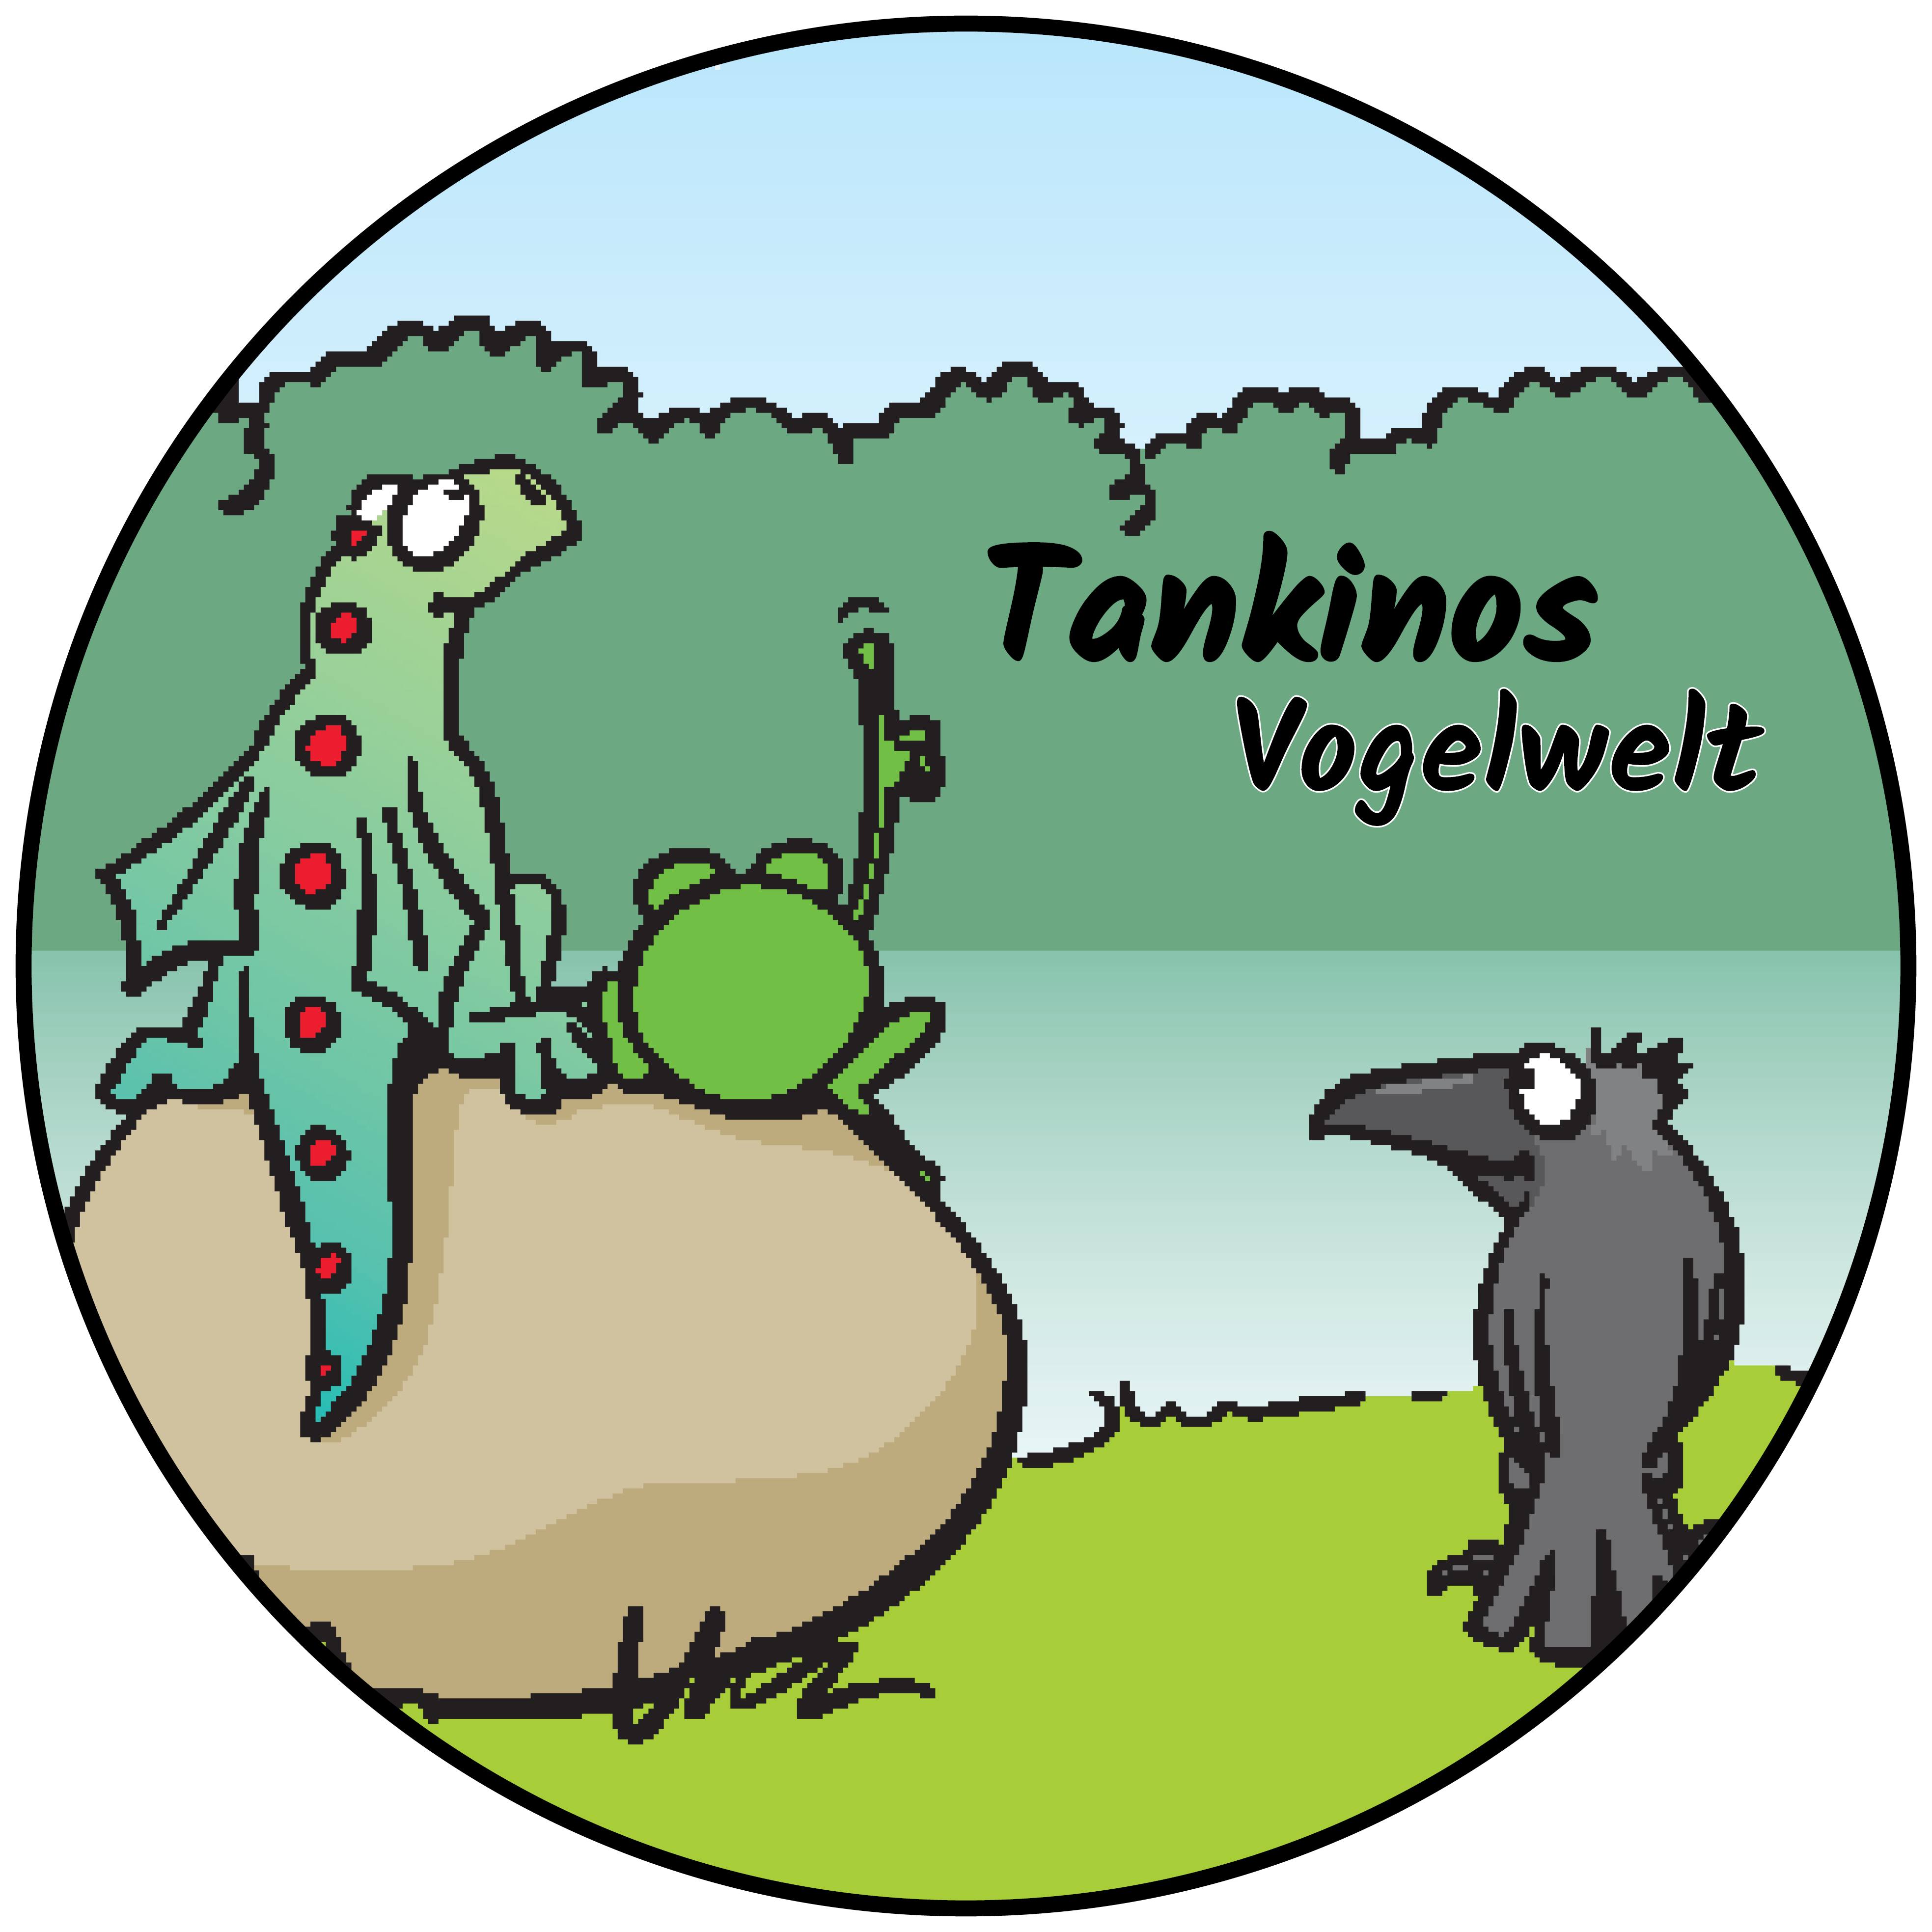 Tankinos Vogelwelt